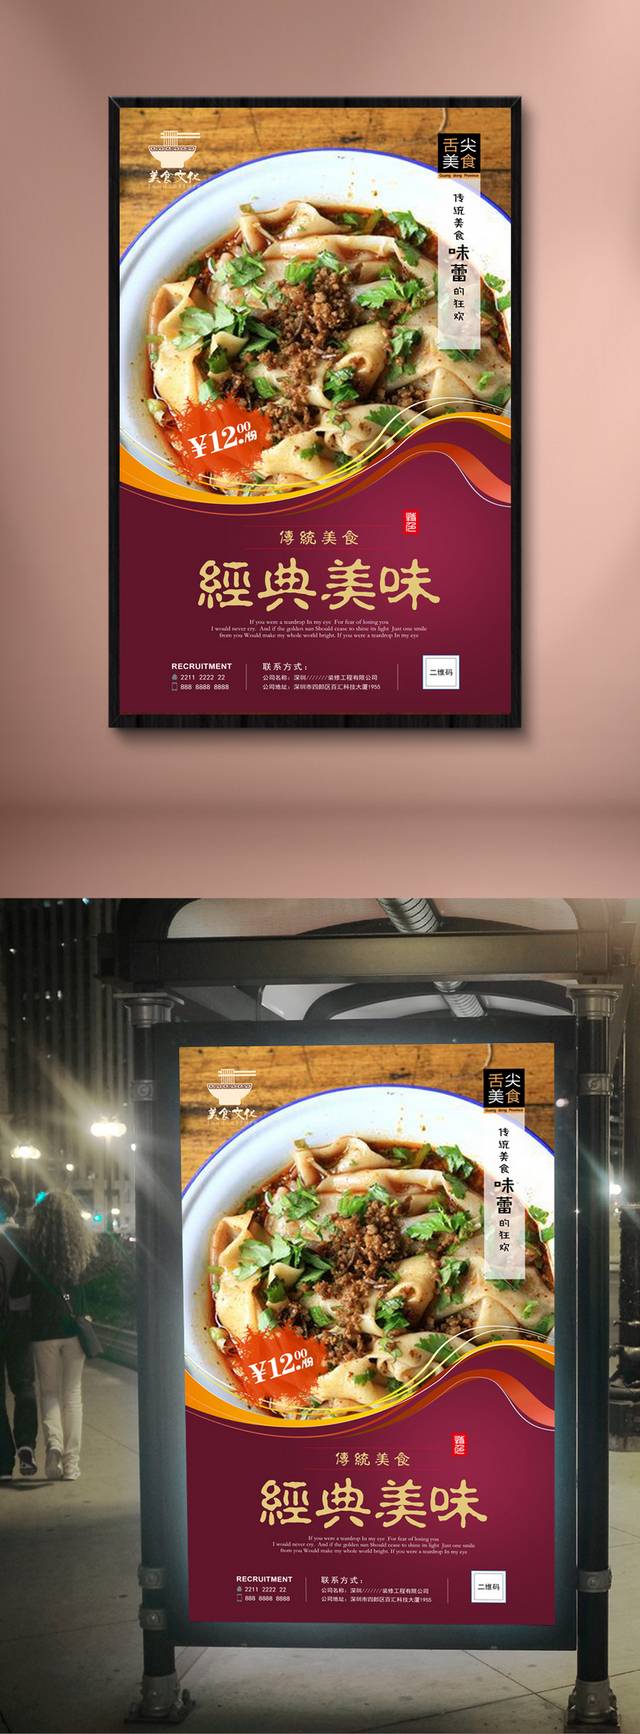 美味锅盖面宣传海报设计高清